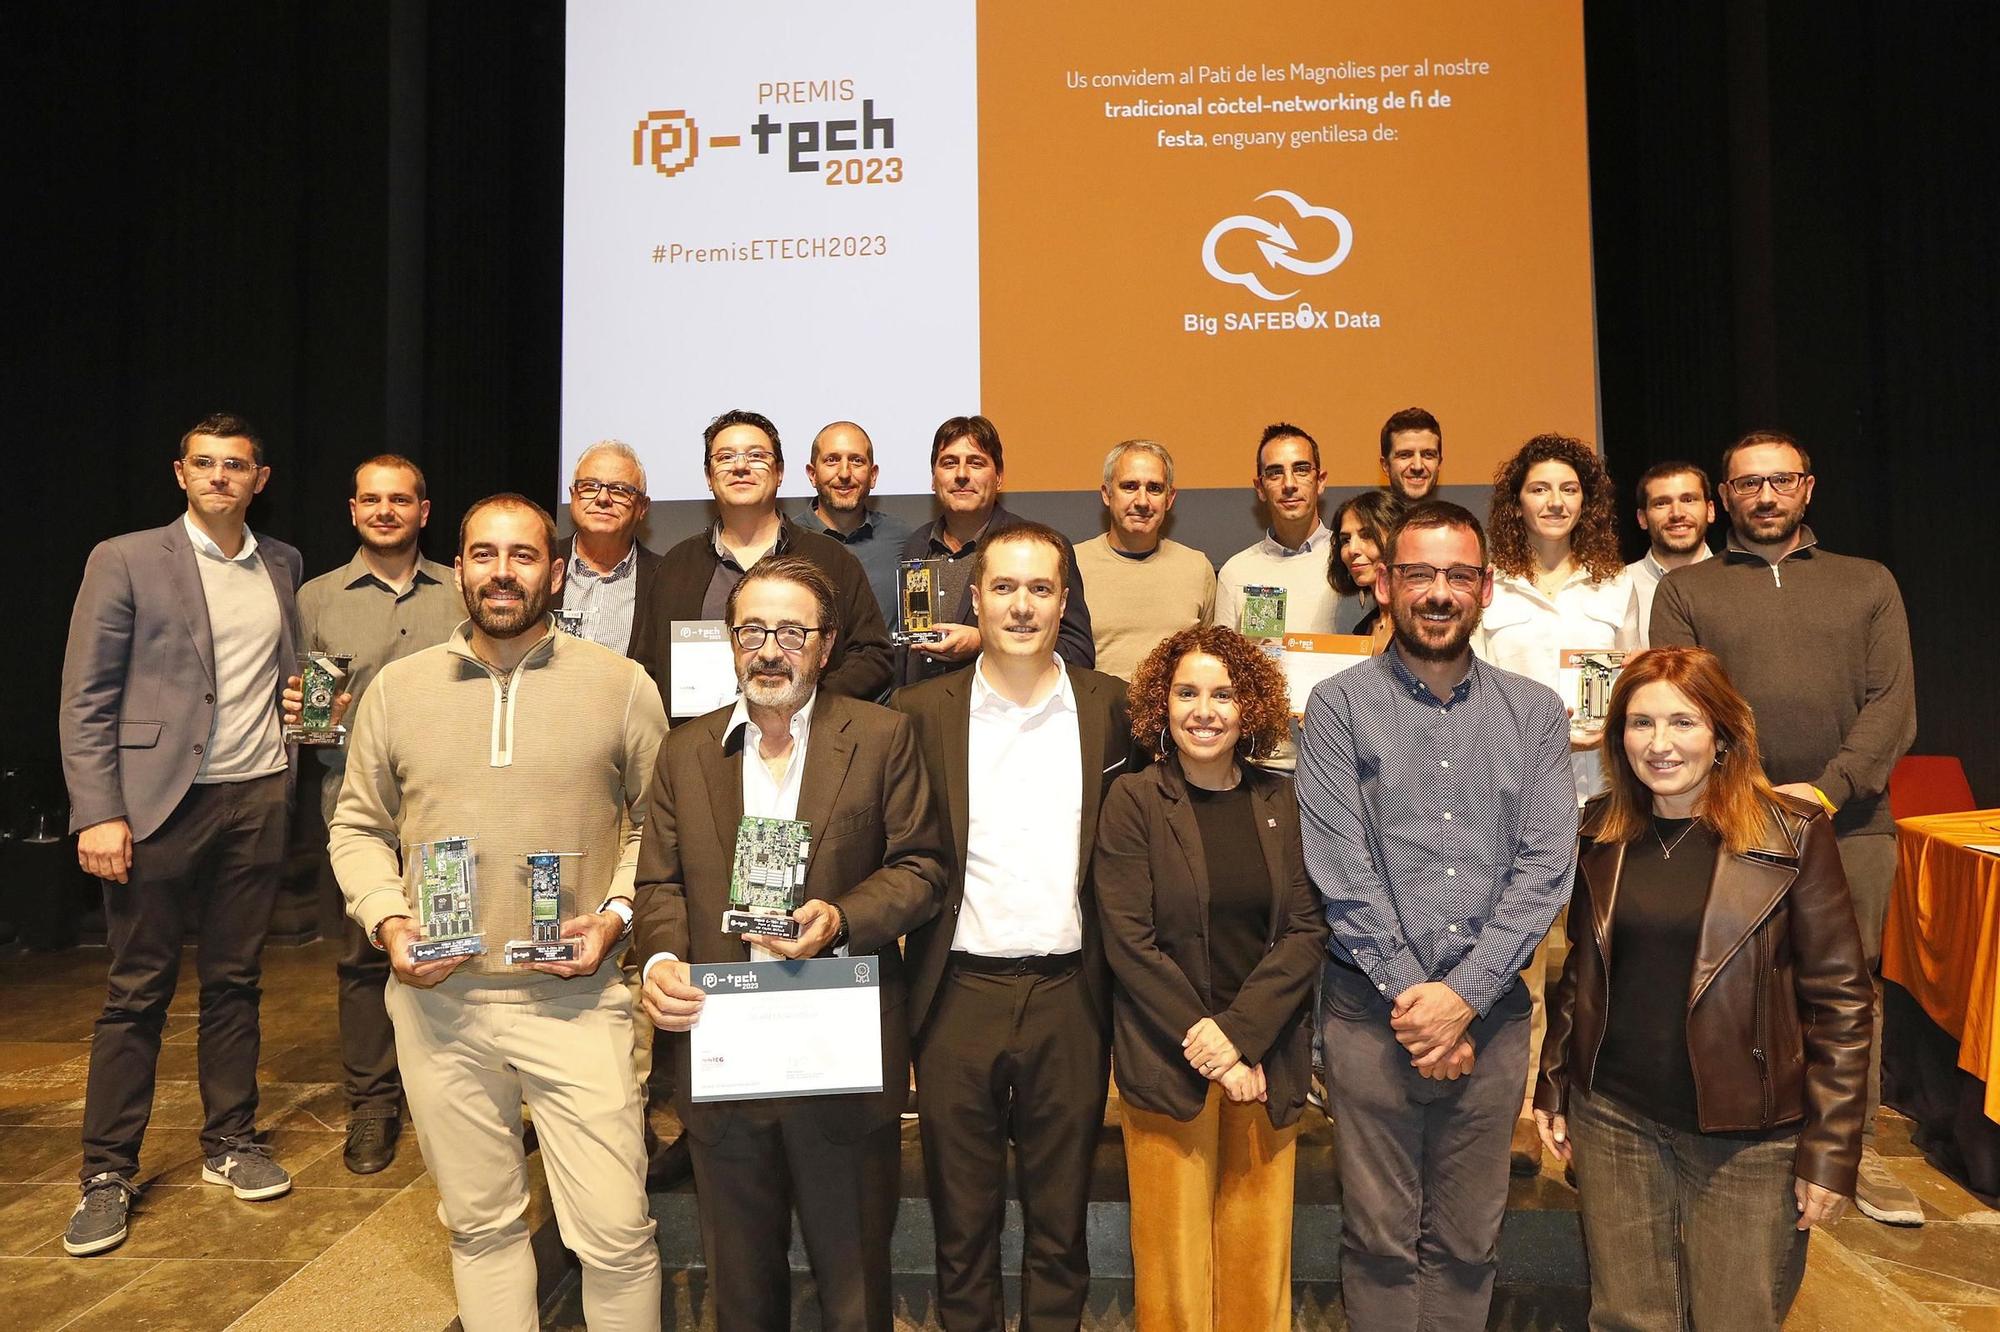 L’AENTEG celebra la seva gran jornada amb la dissetena edició els Premis E-TECH